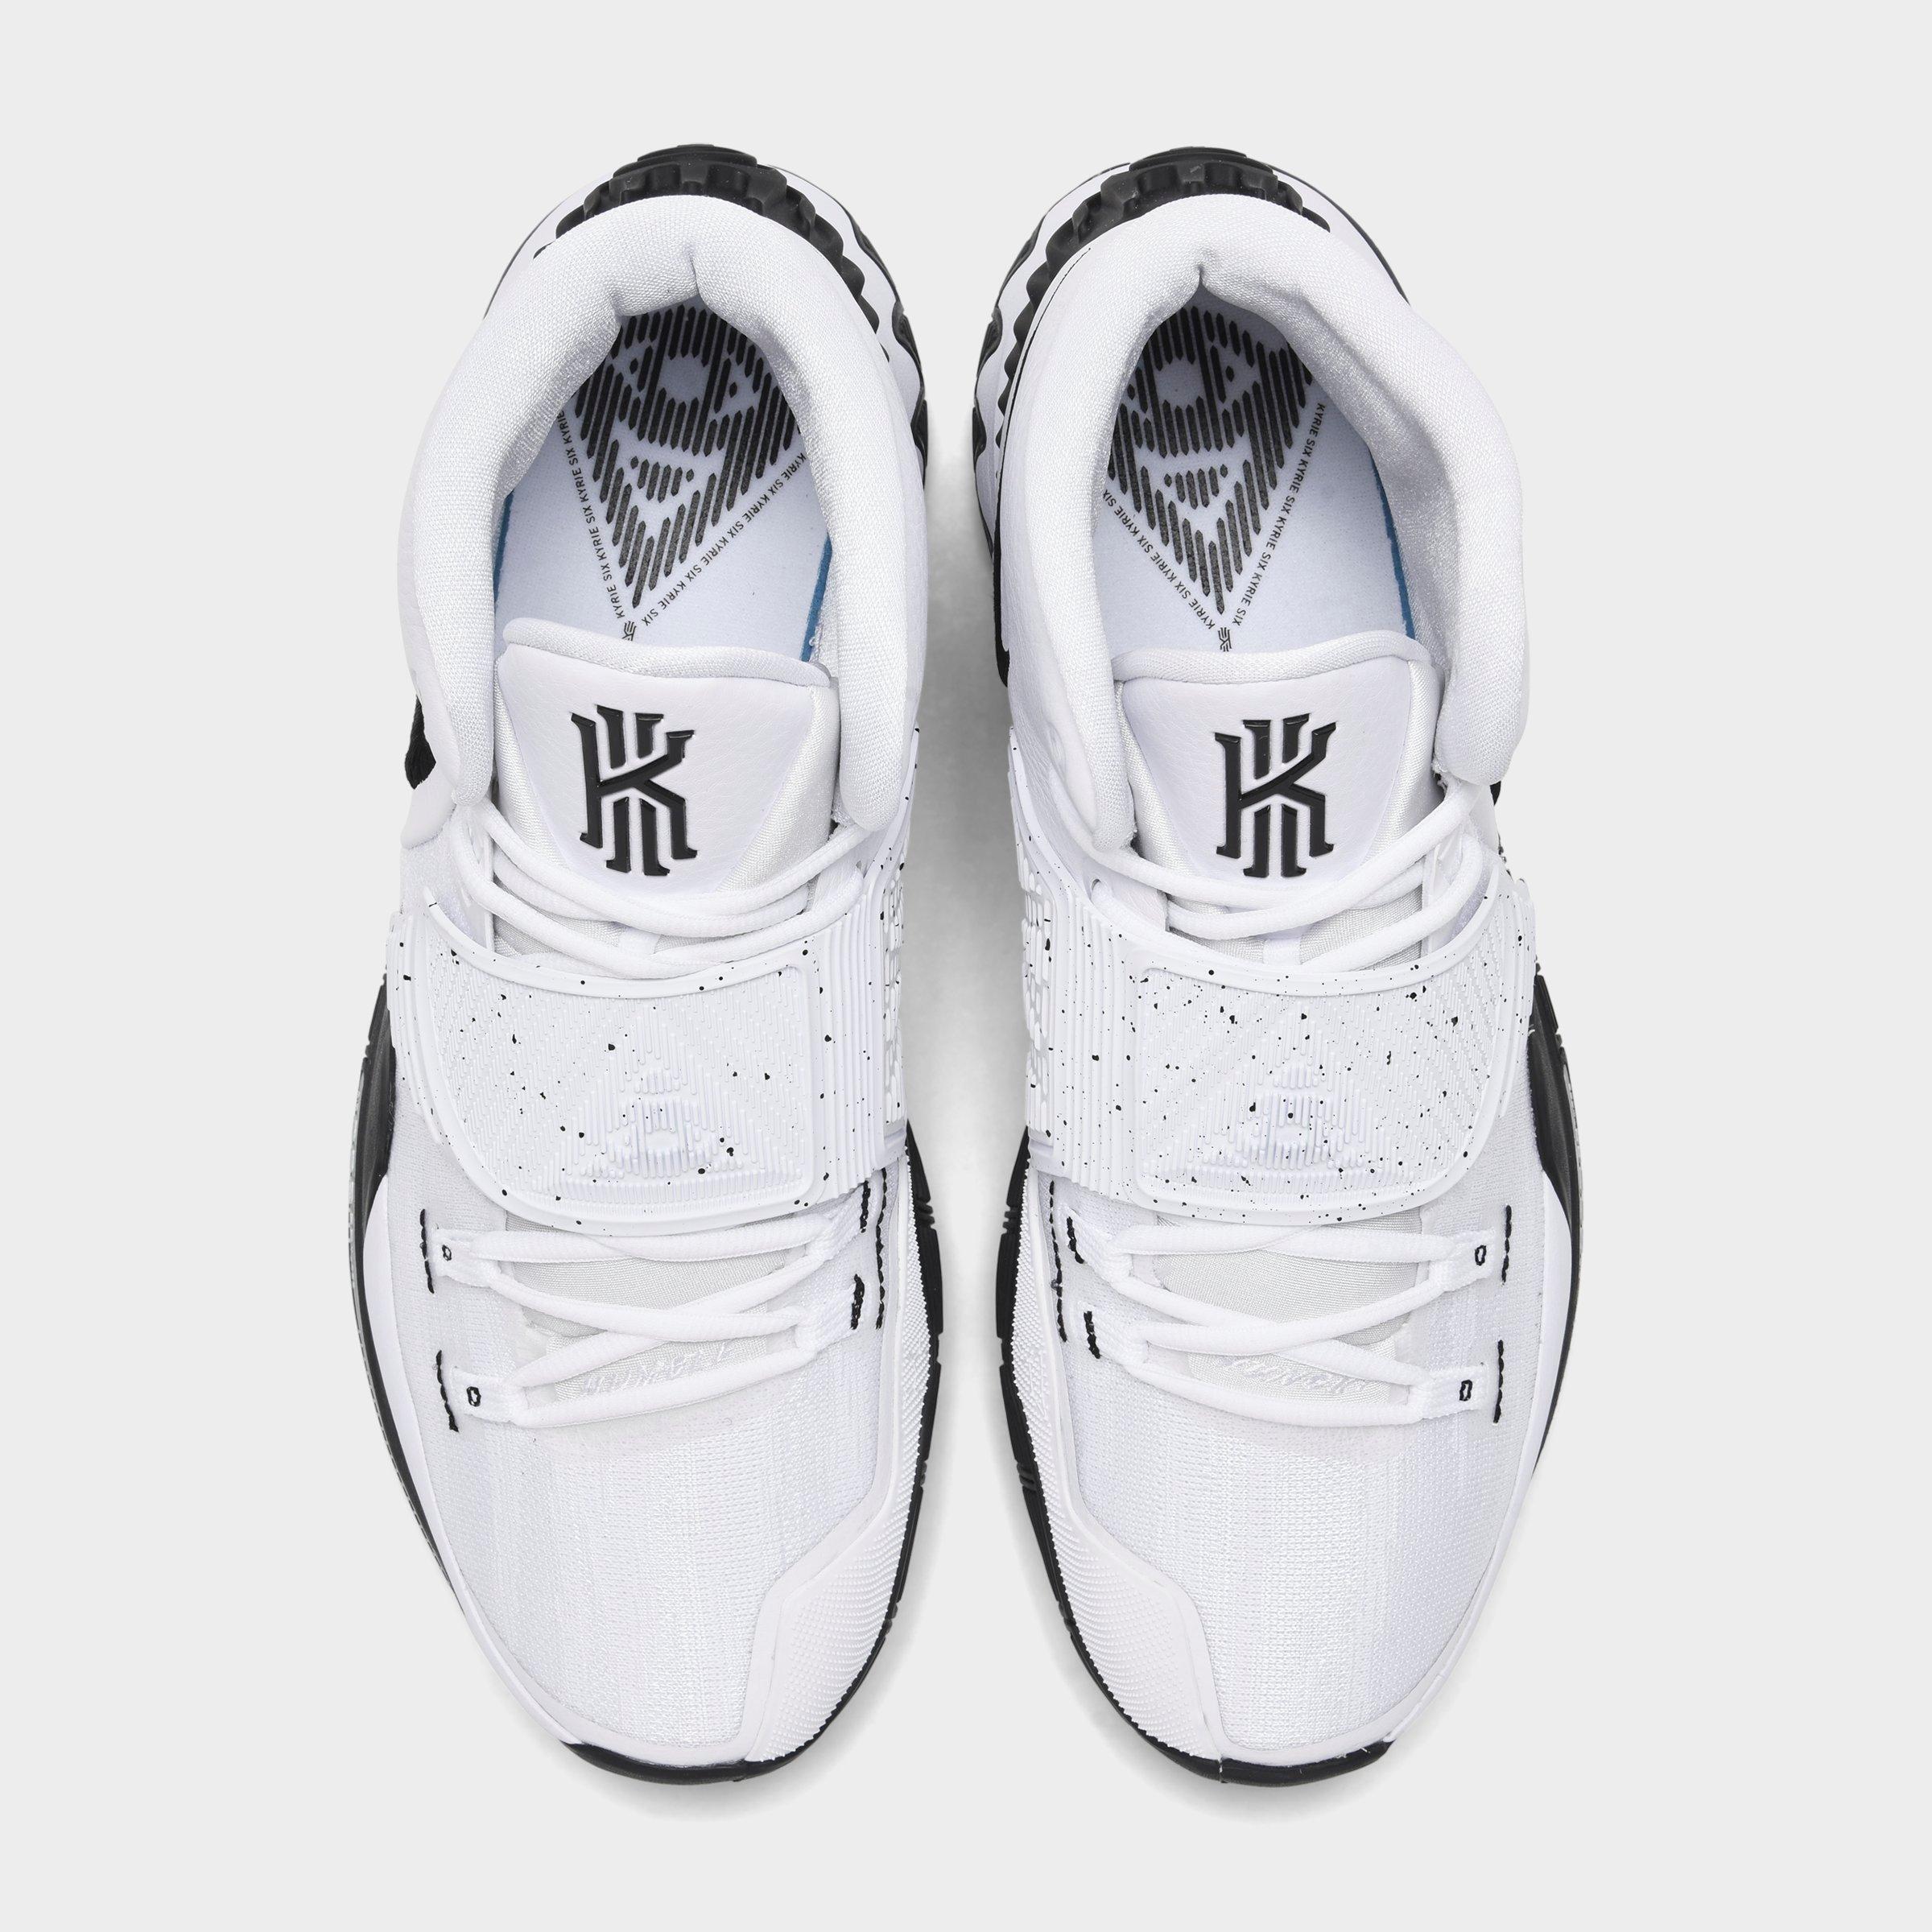 Kyrie 6 EP 'Jet Black Men' s Fashion Footwear Sneakers on